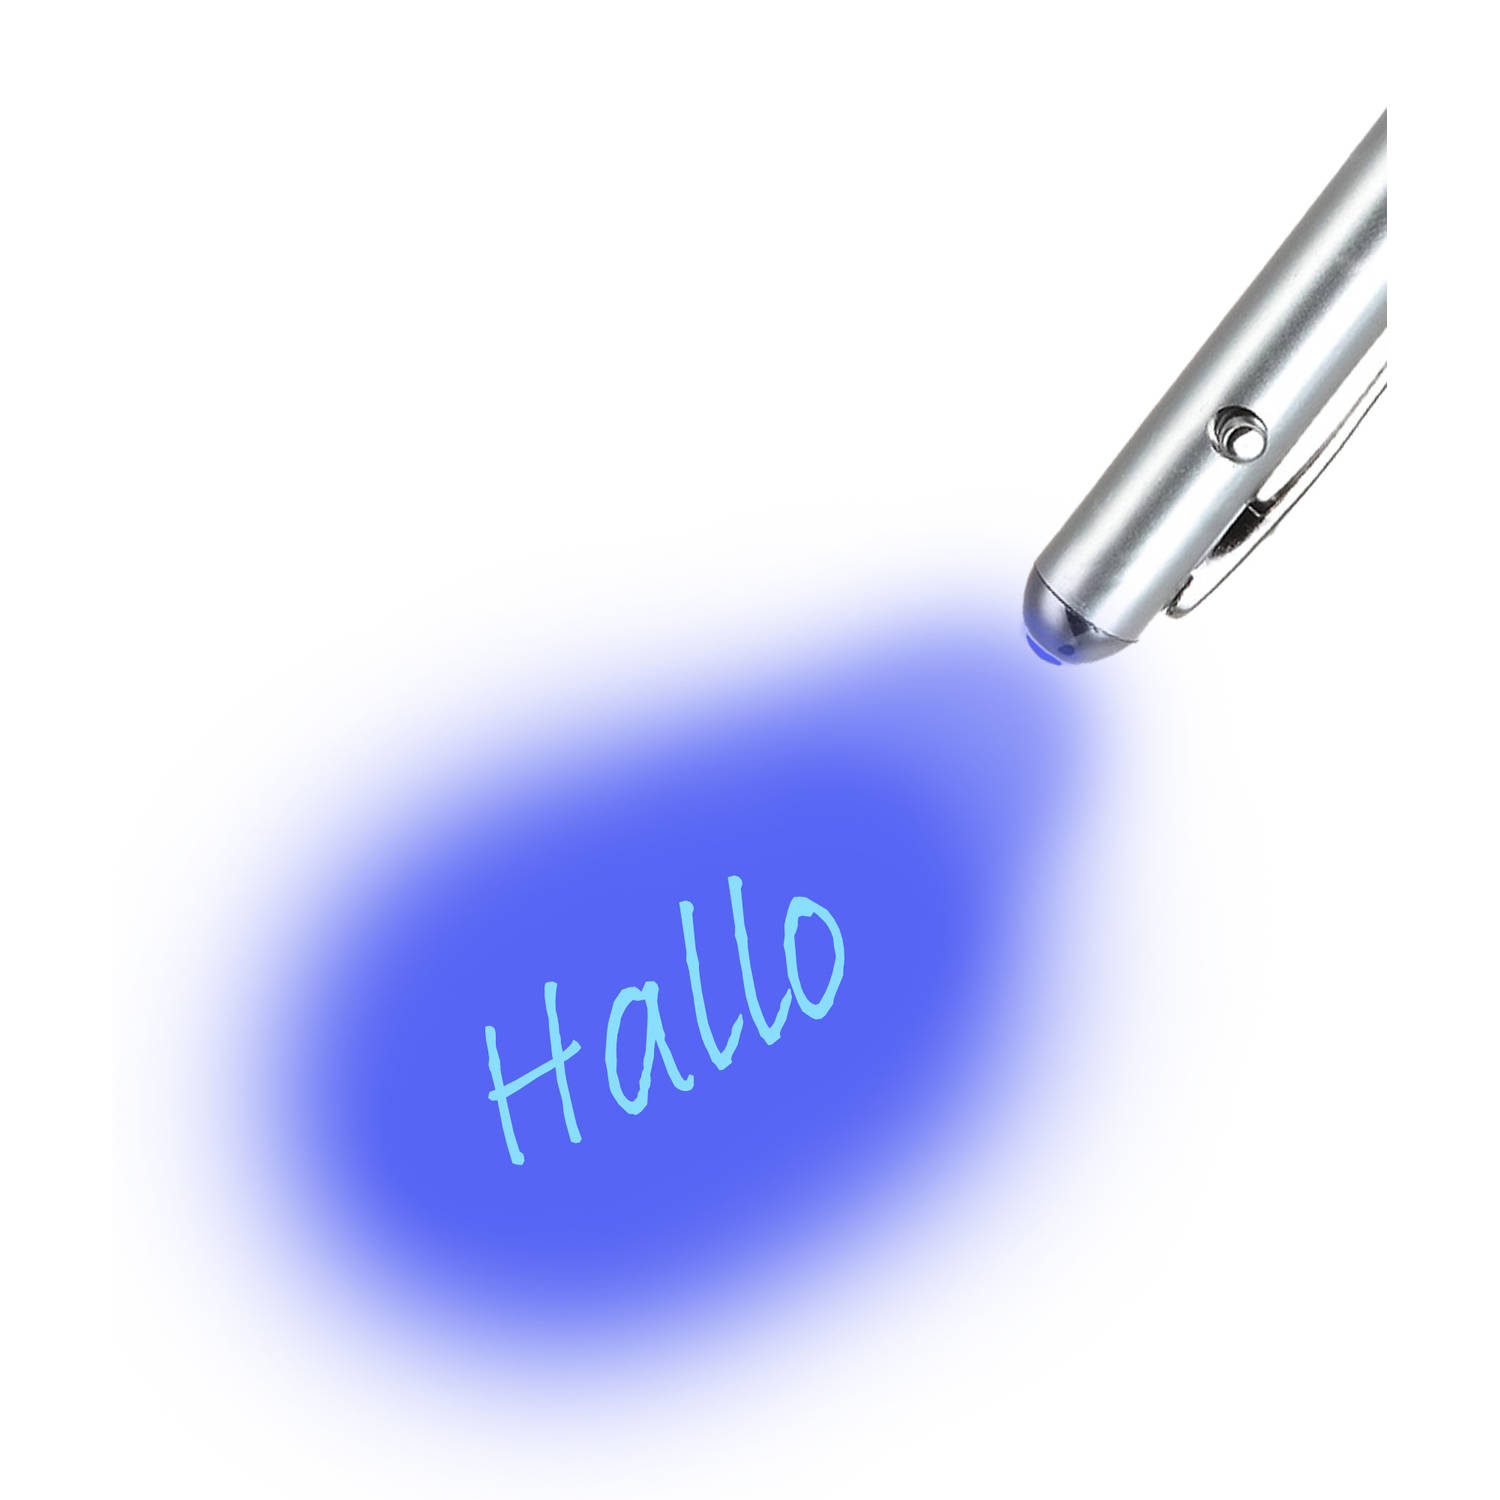 Basey UV Onzichtbare Pen - Geheimschrift Pen UV Lampje En Onzichtbare Inkt | Blokker